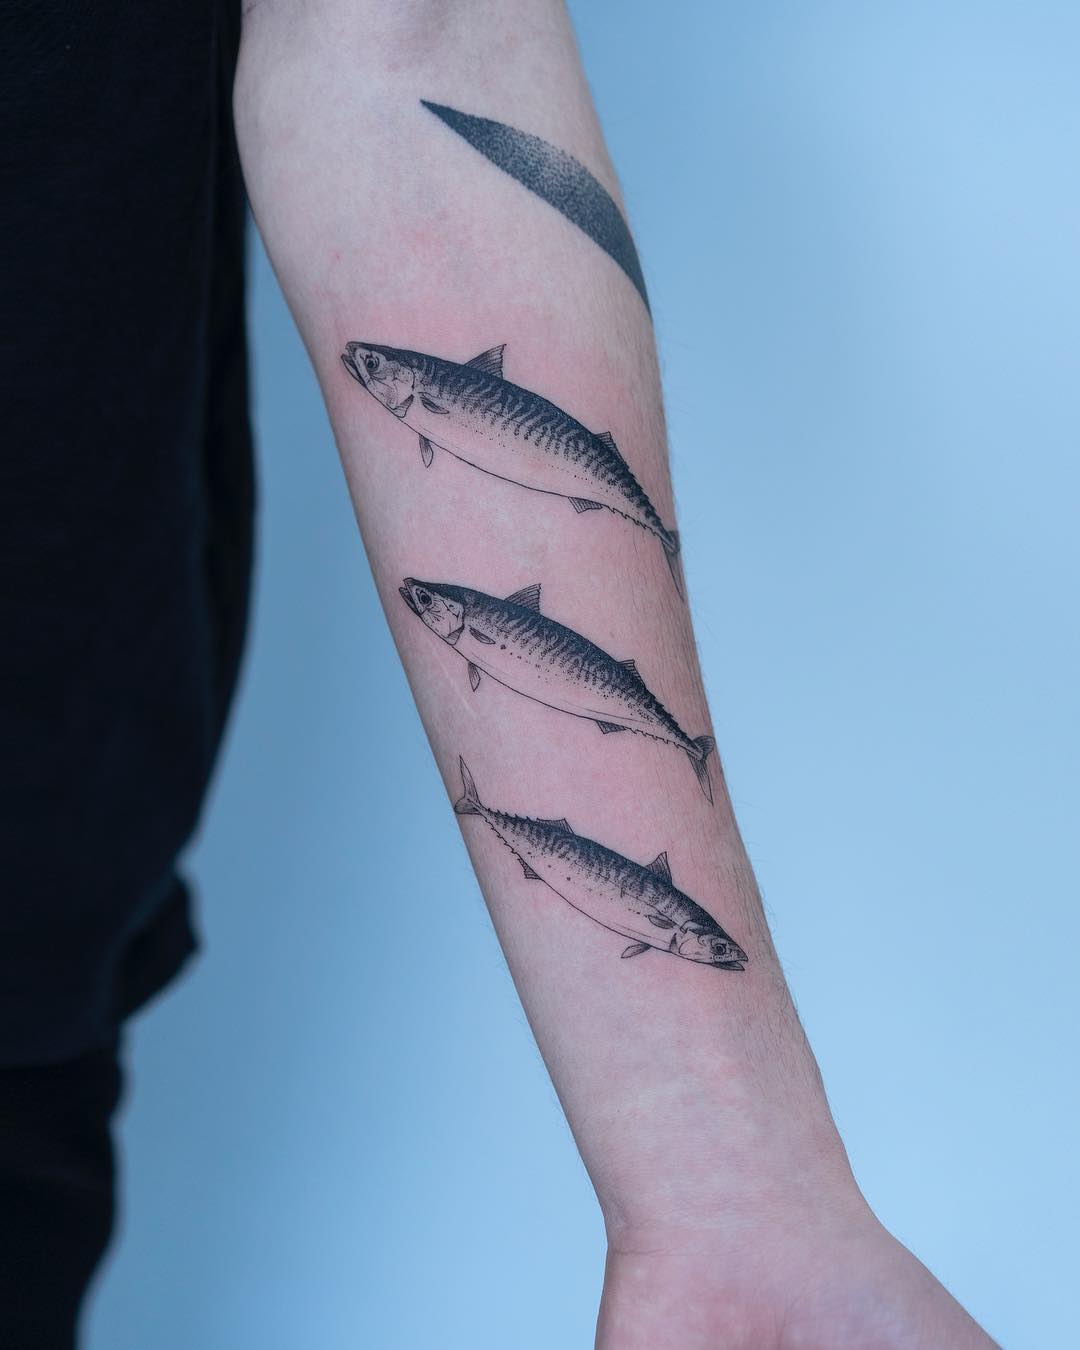 Mackerel tattoos by tattooist Oozy